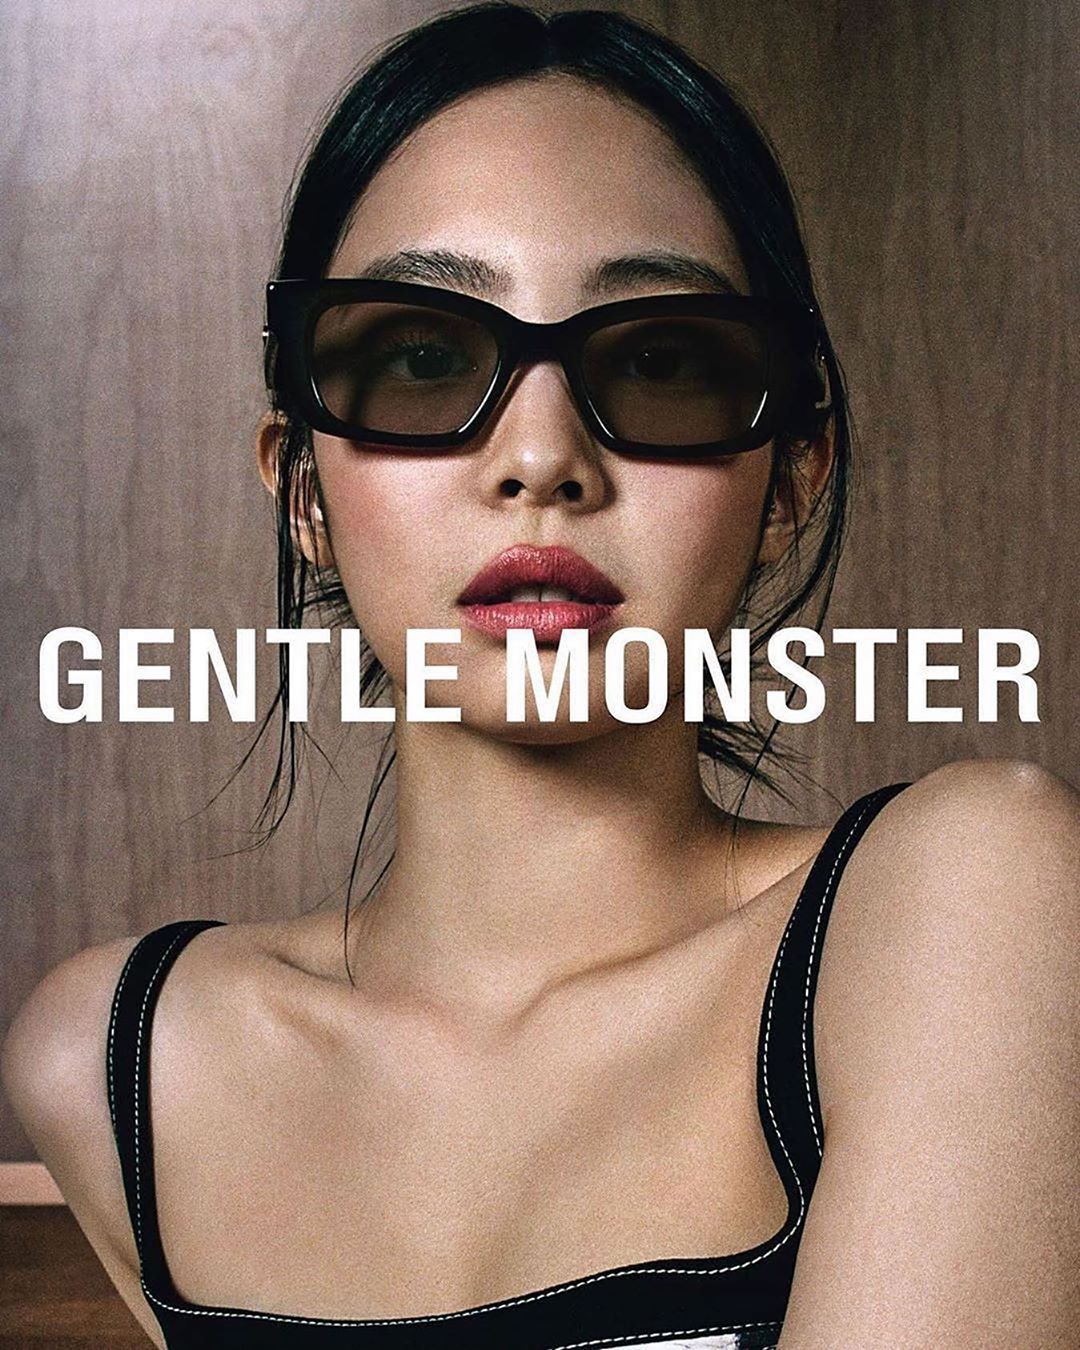 gentle-monster-jennie-blackpink-eyewear-launch-date-april-21-2020 (18)